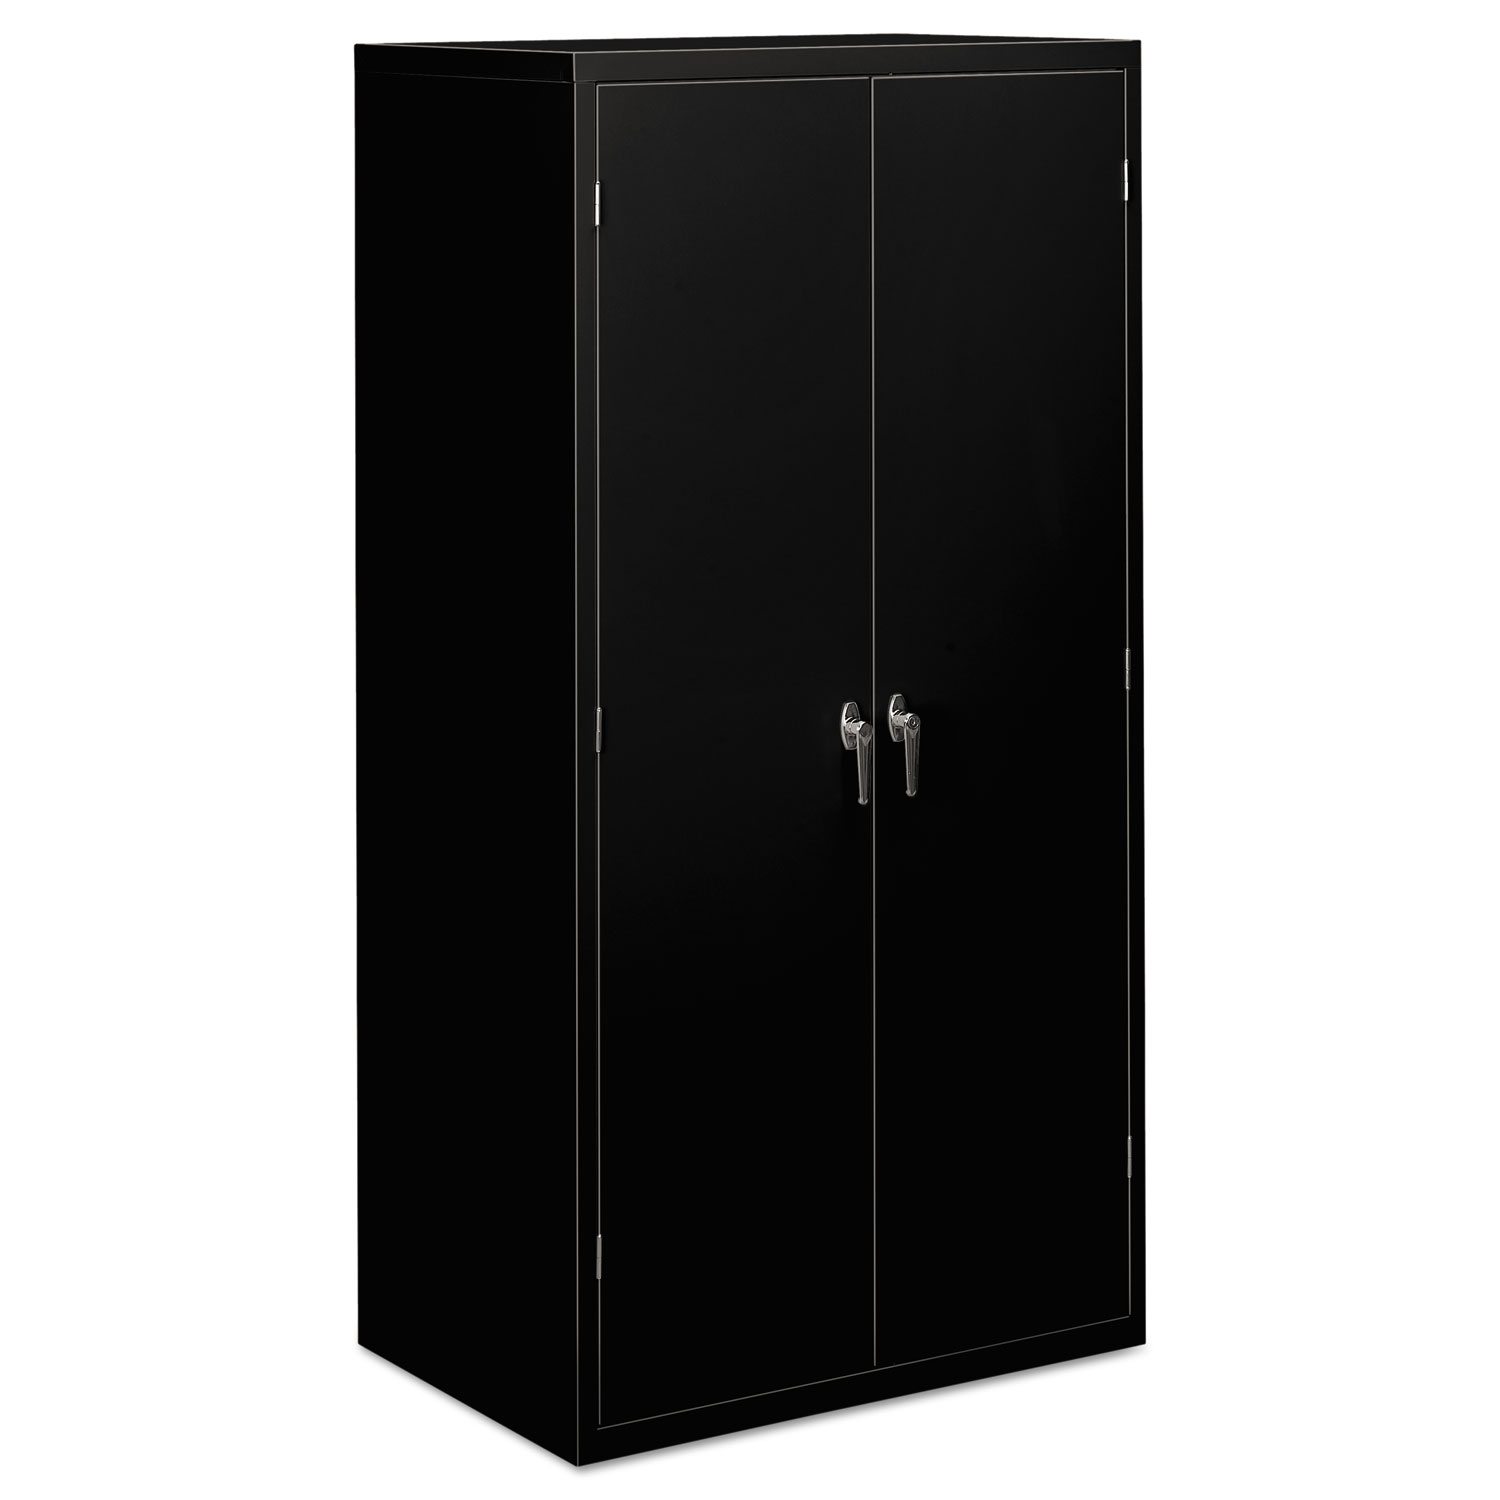  HON HSC2472.L.P Assembled Storage Cabinet, 36w x 24 1/4d x 71 3/4h, Black (HONSC2472P) 